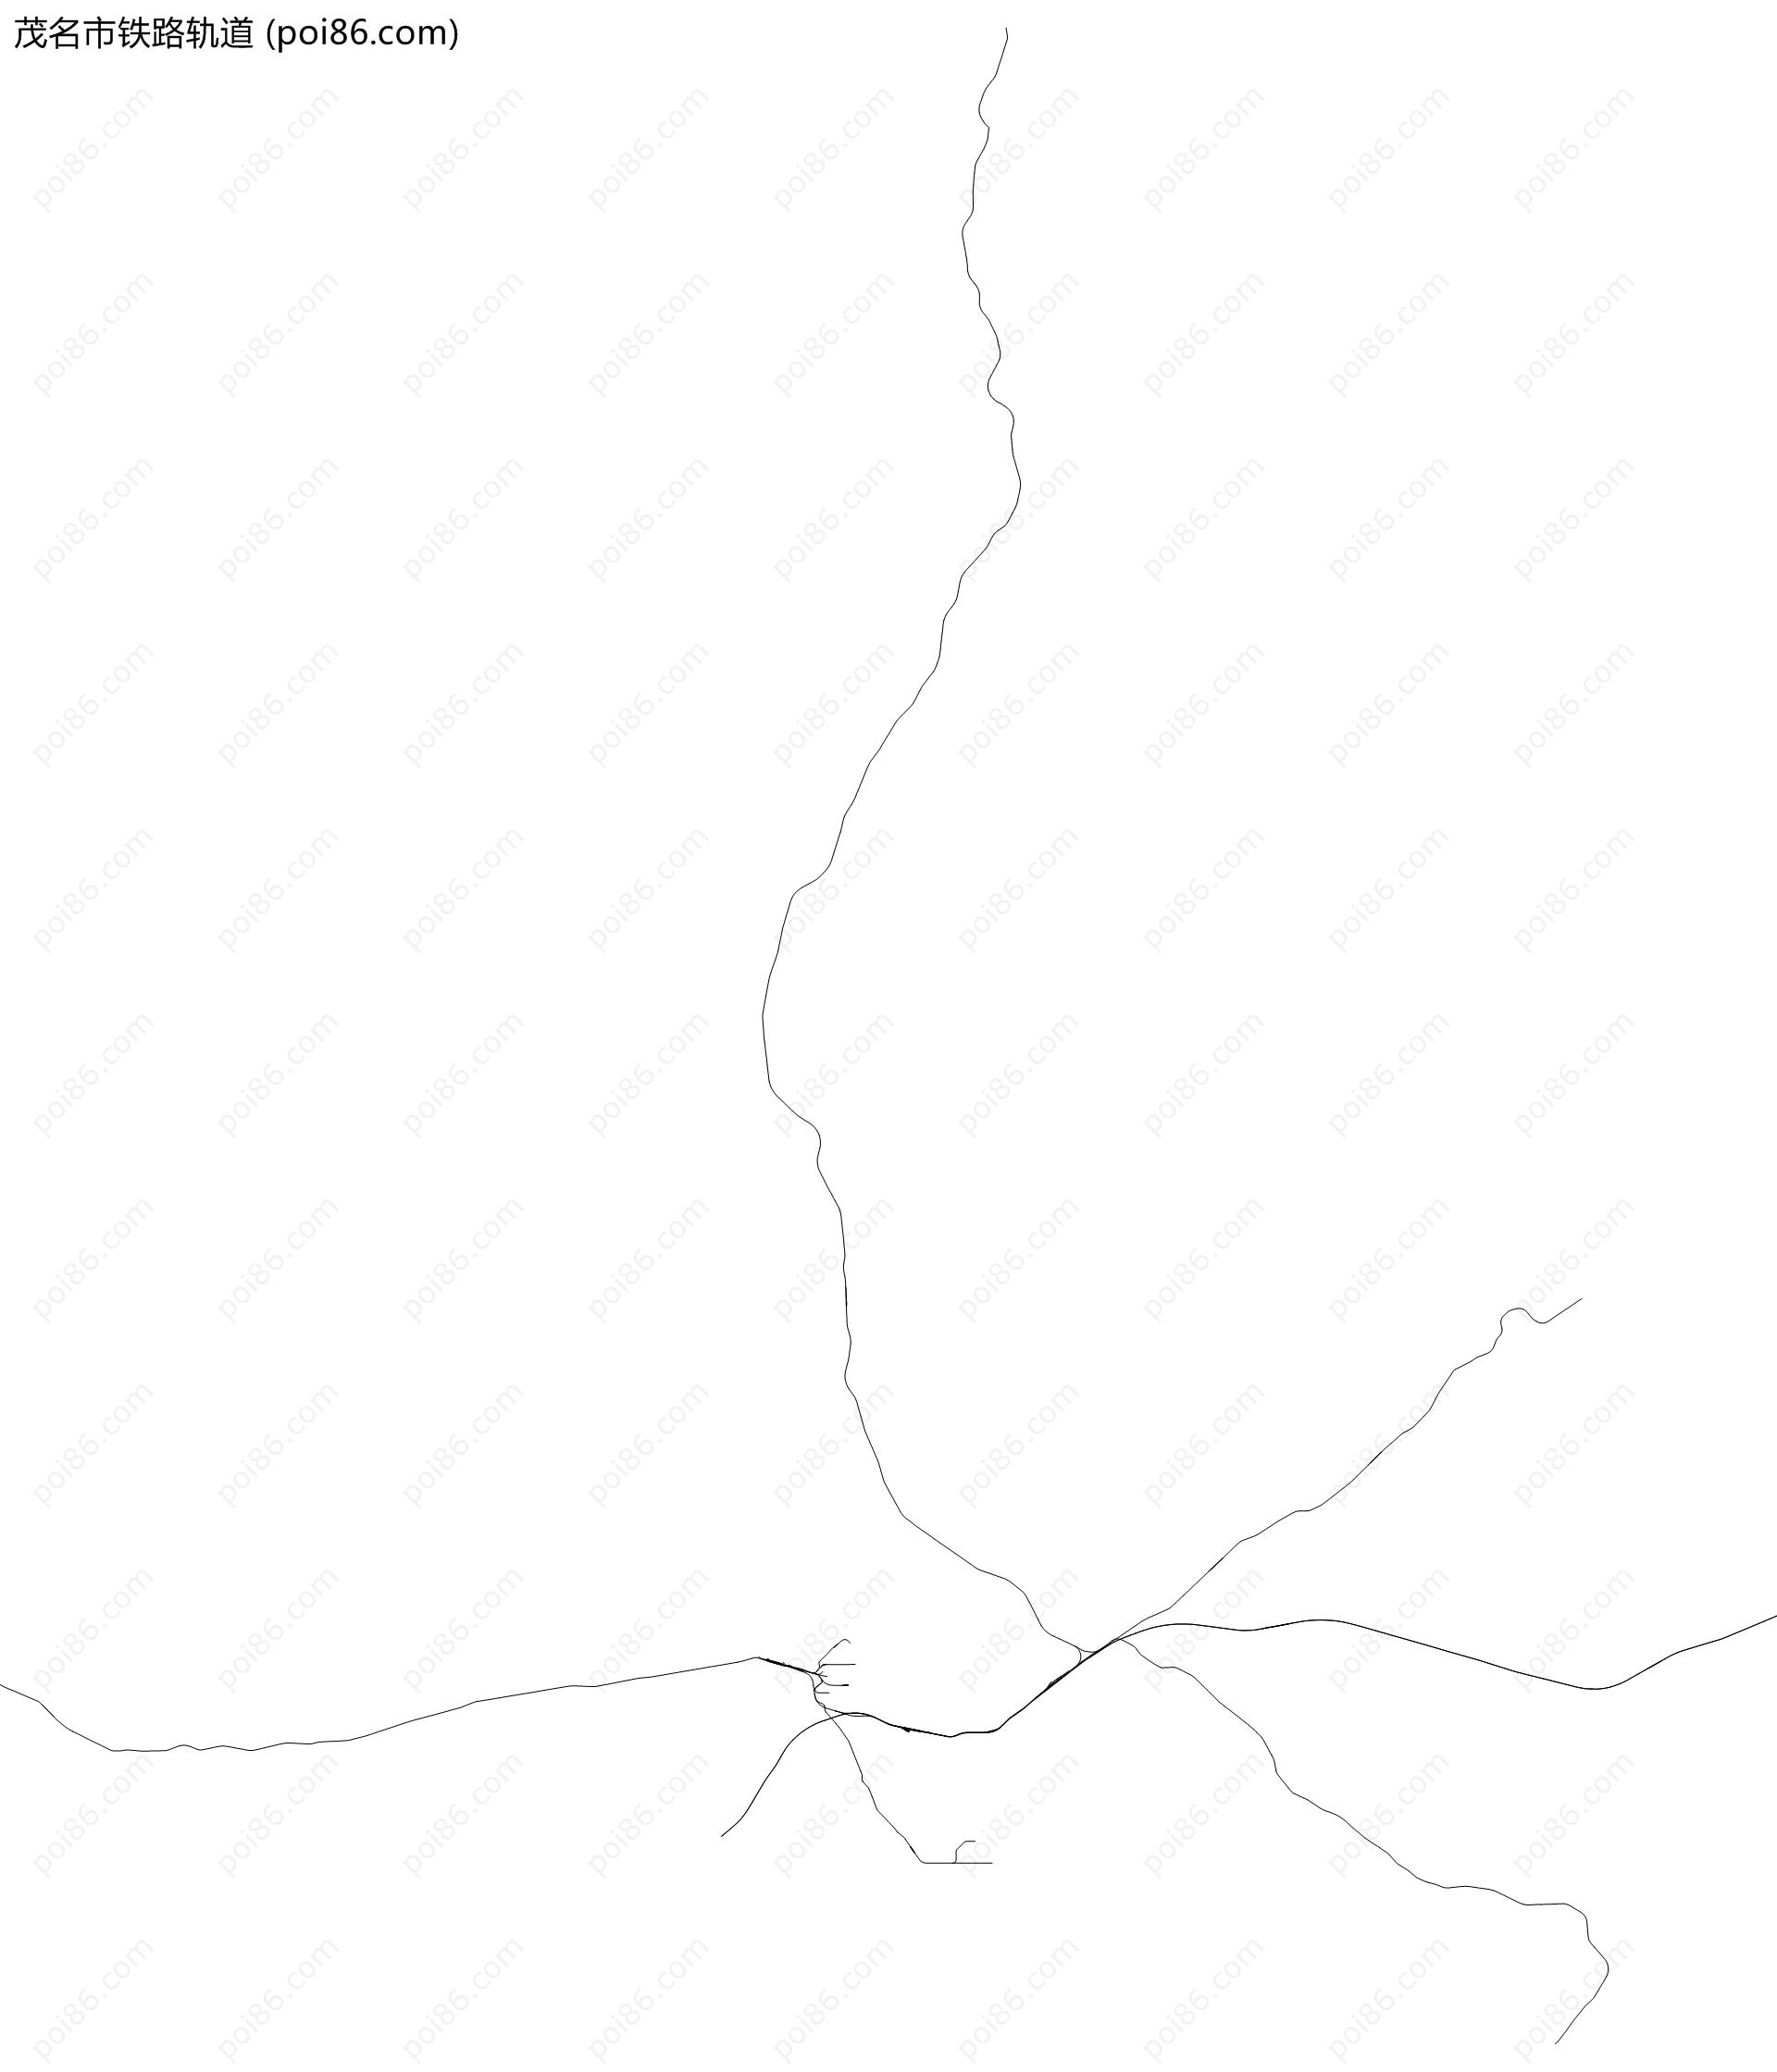 茂名市铁路轨道地图